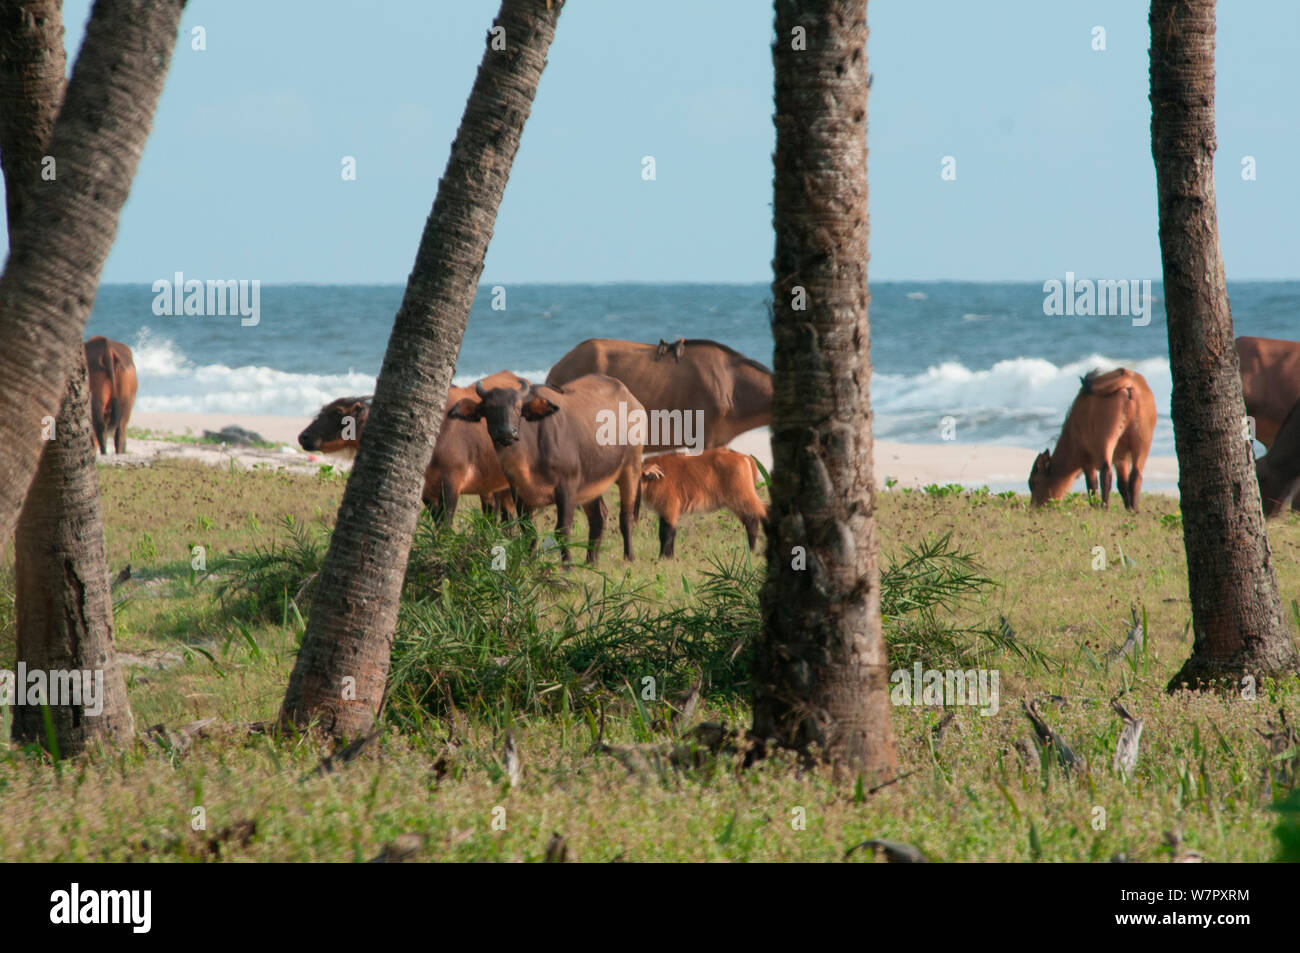 Bosque Buffalo (Syncerus caffer nanus) cabaña cerca de la playa, el Parque Nacional Loango, Gabón. Fotografía tomada en la ubicación de "África" de la serie de la BBC, en enero de 2011. Foto de stock